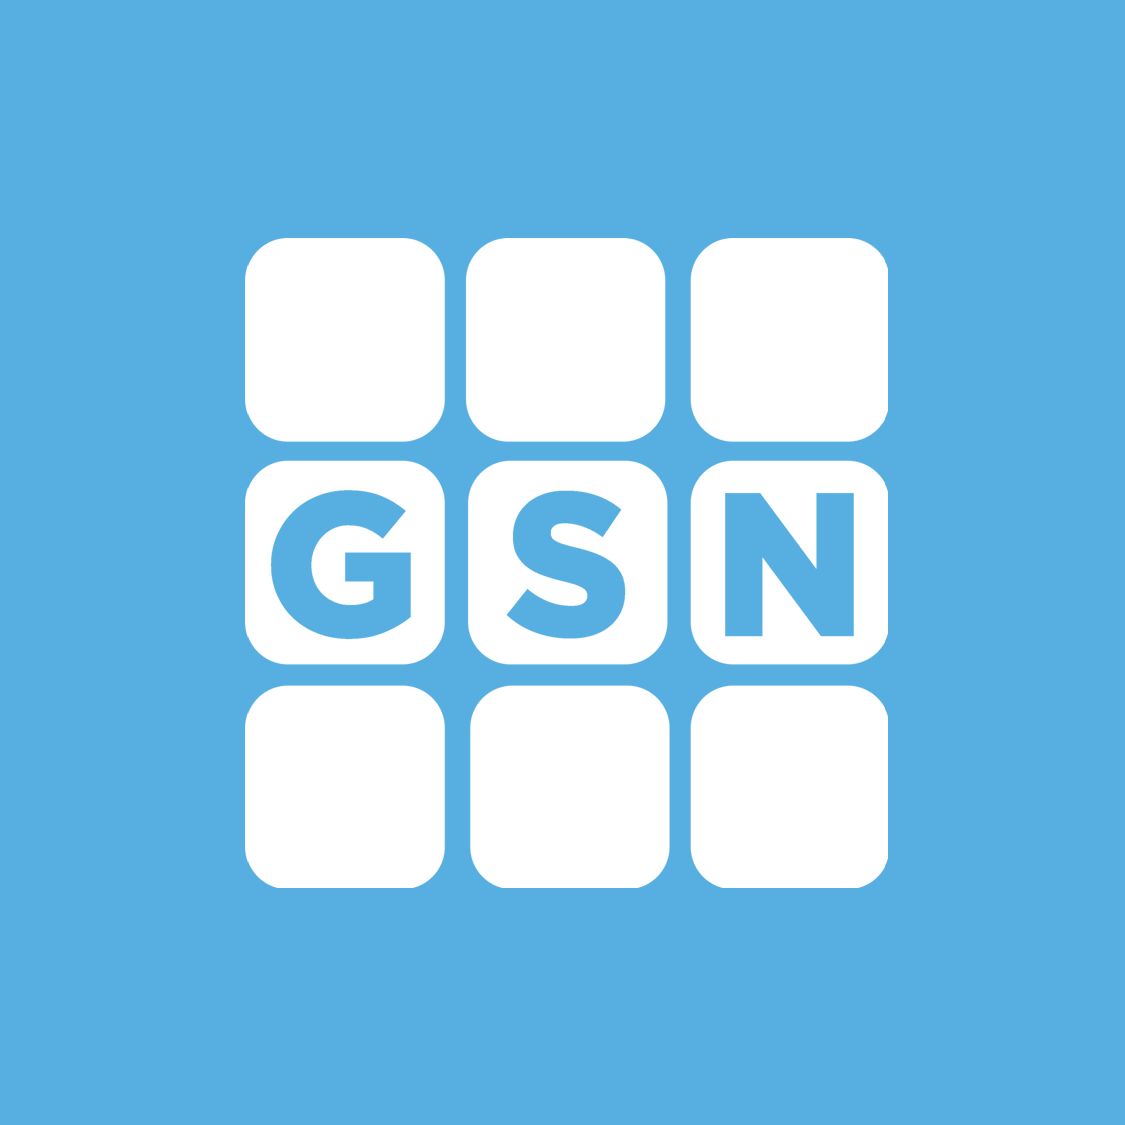 GSN Logo - Gsn Logos